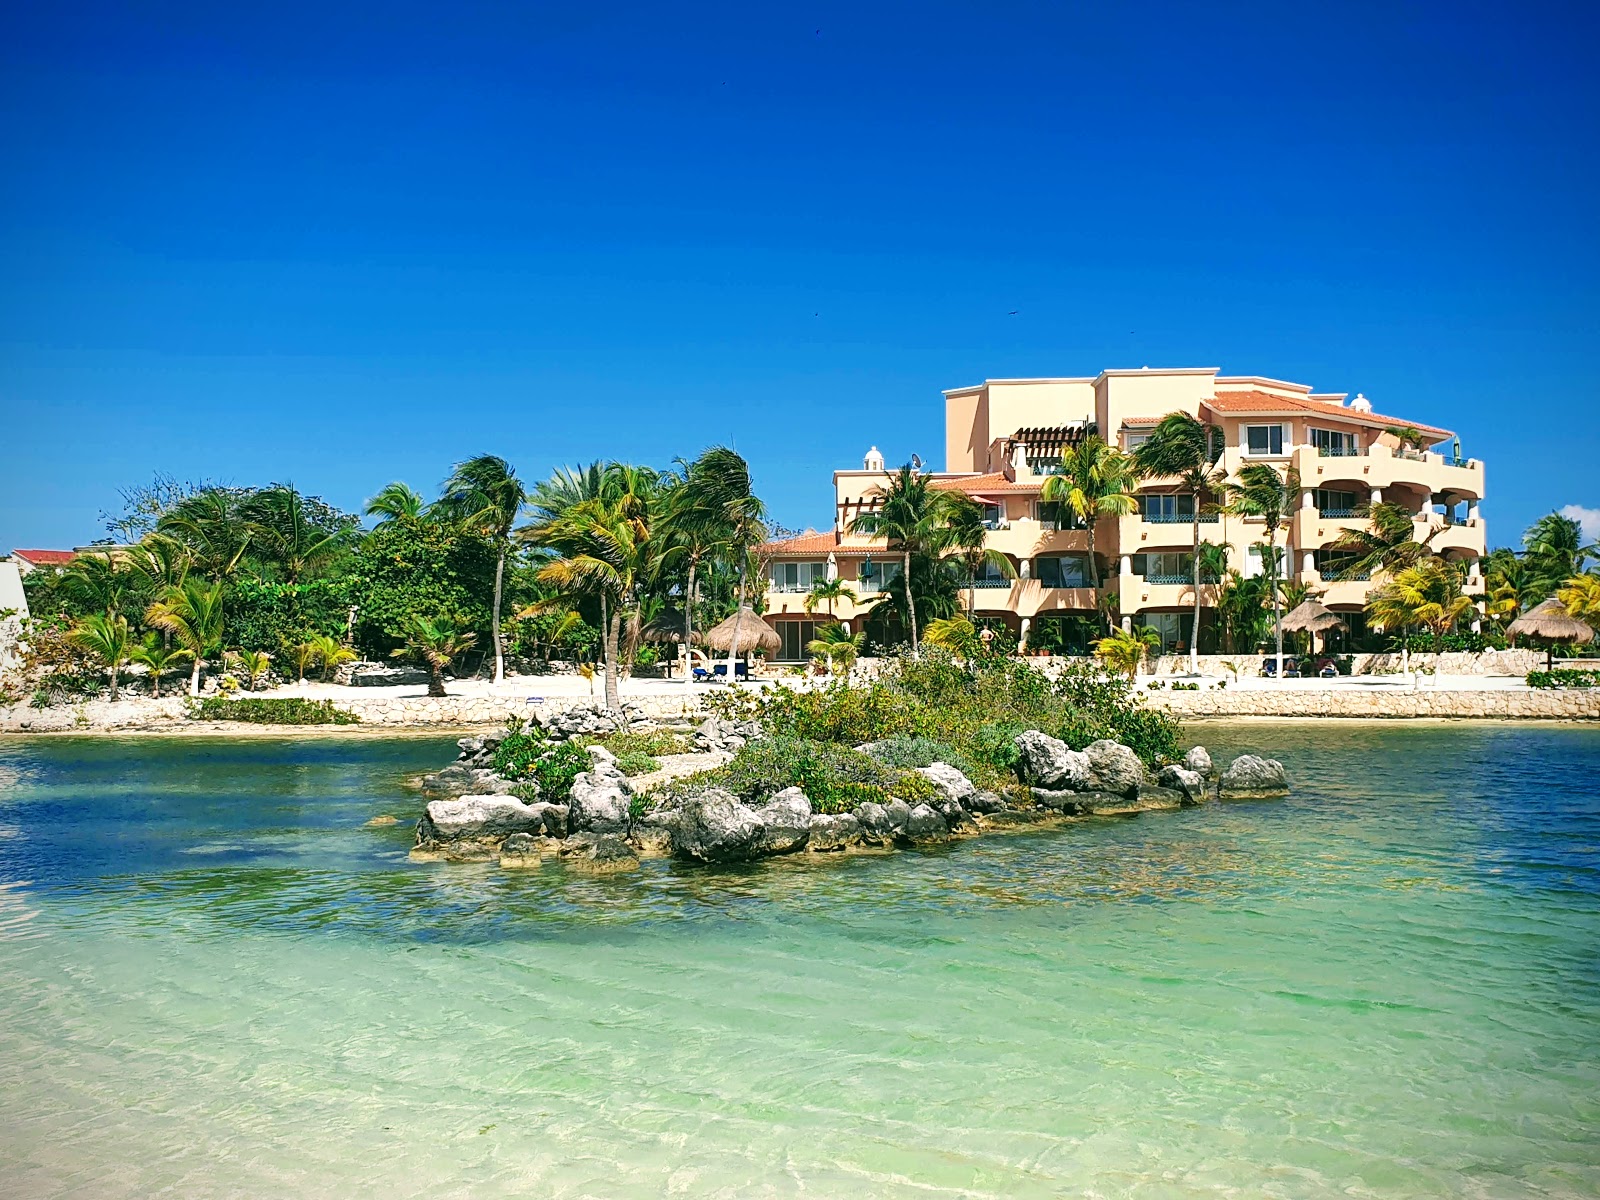 Photo de Catalonia Yucatan beach - endroit populaire parmi les connaisseurs de la détente